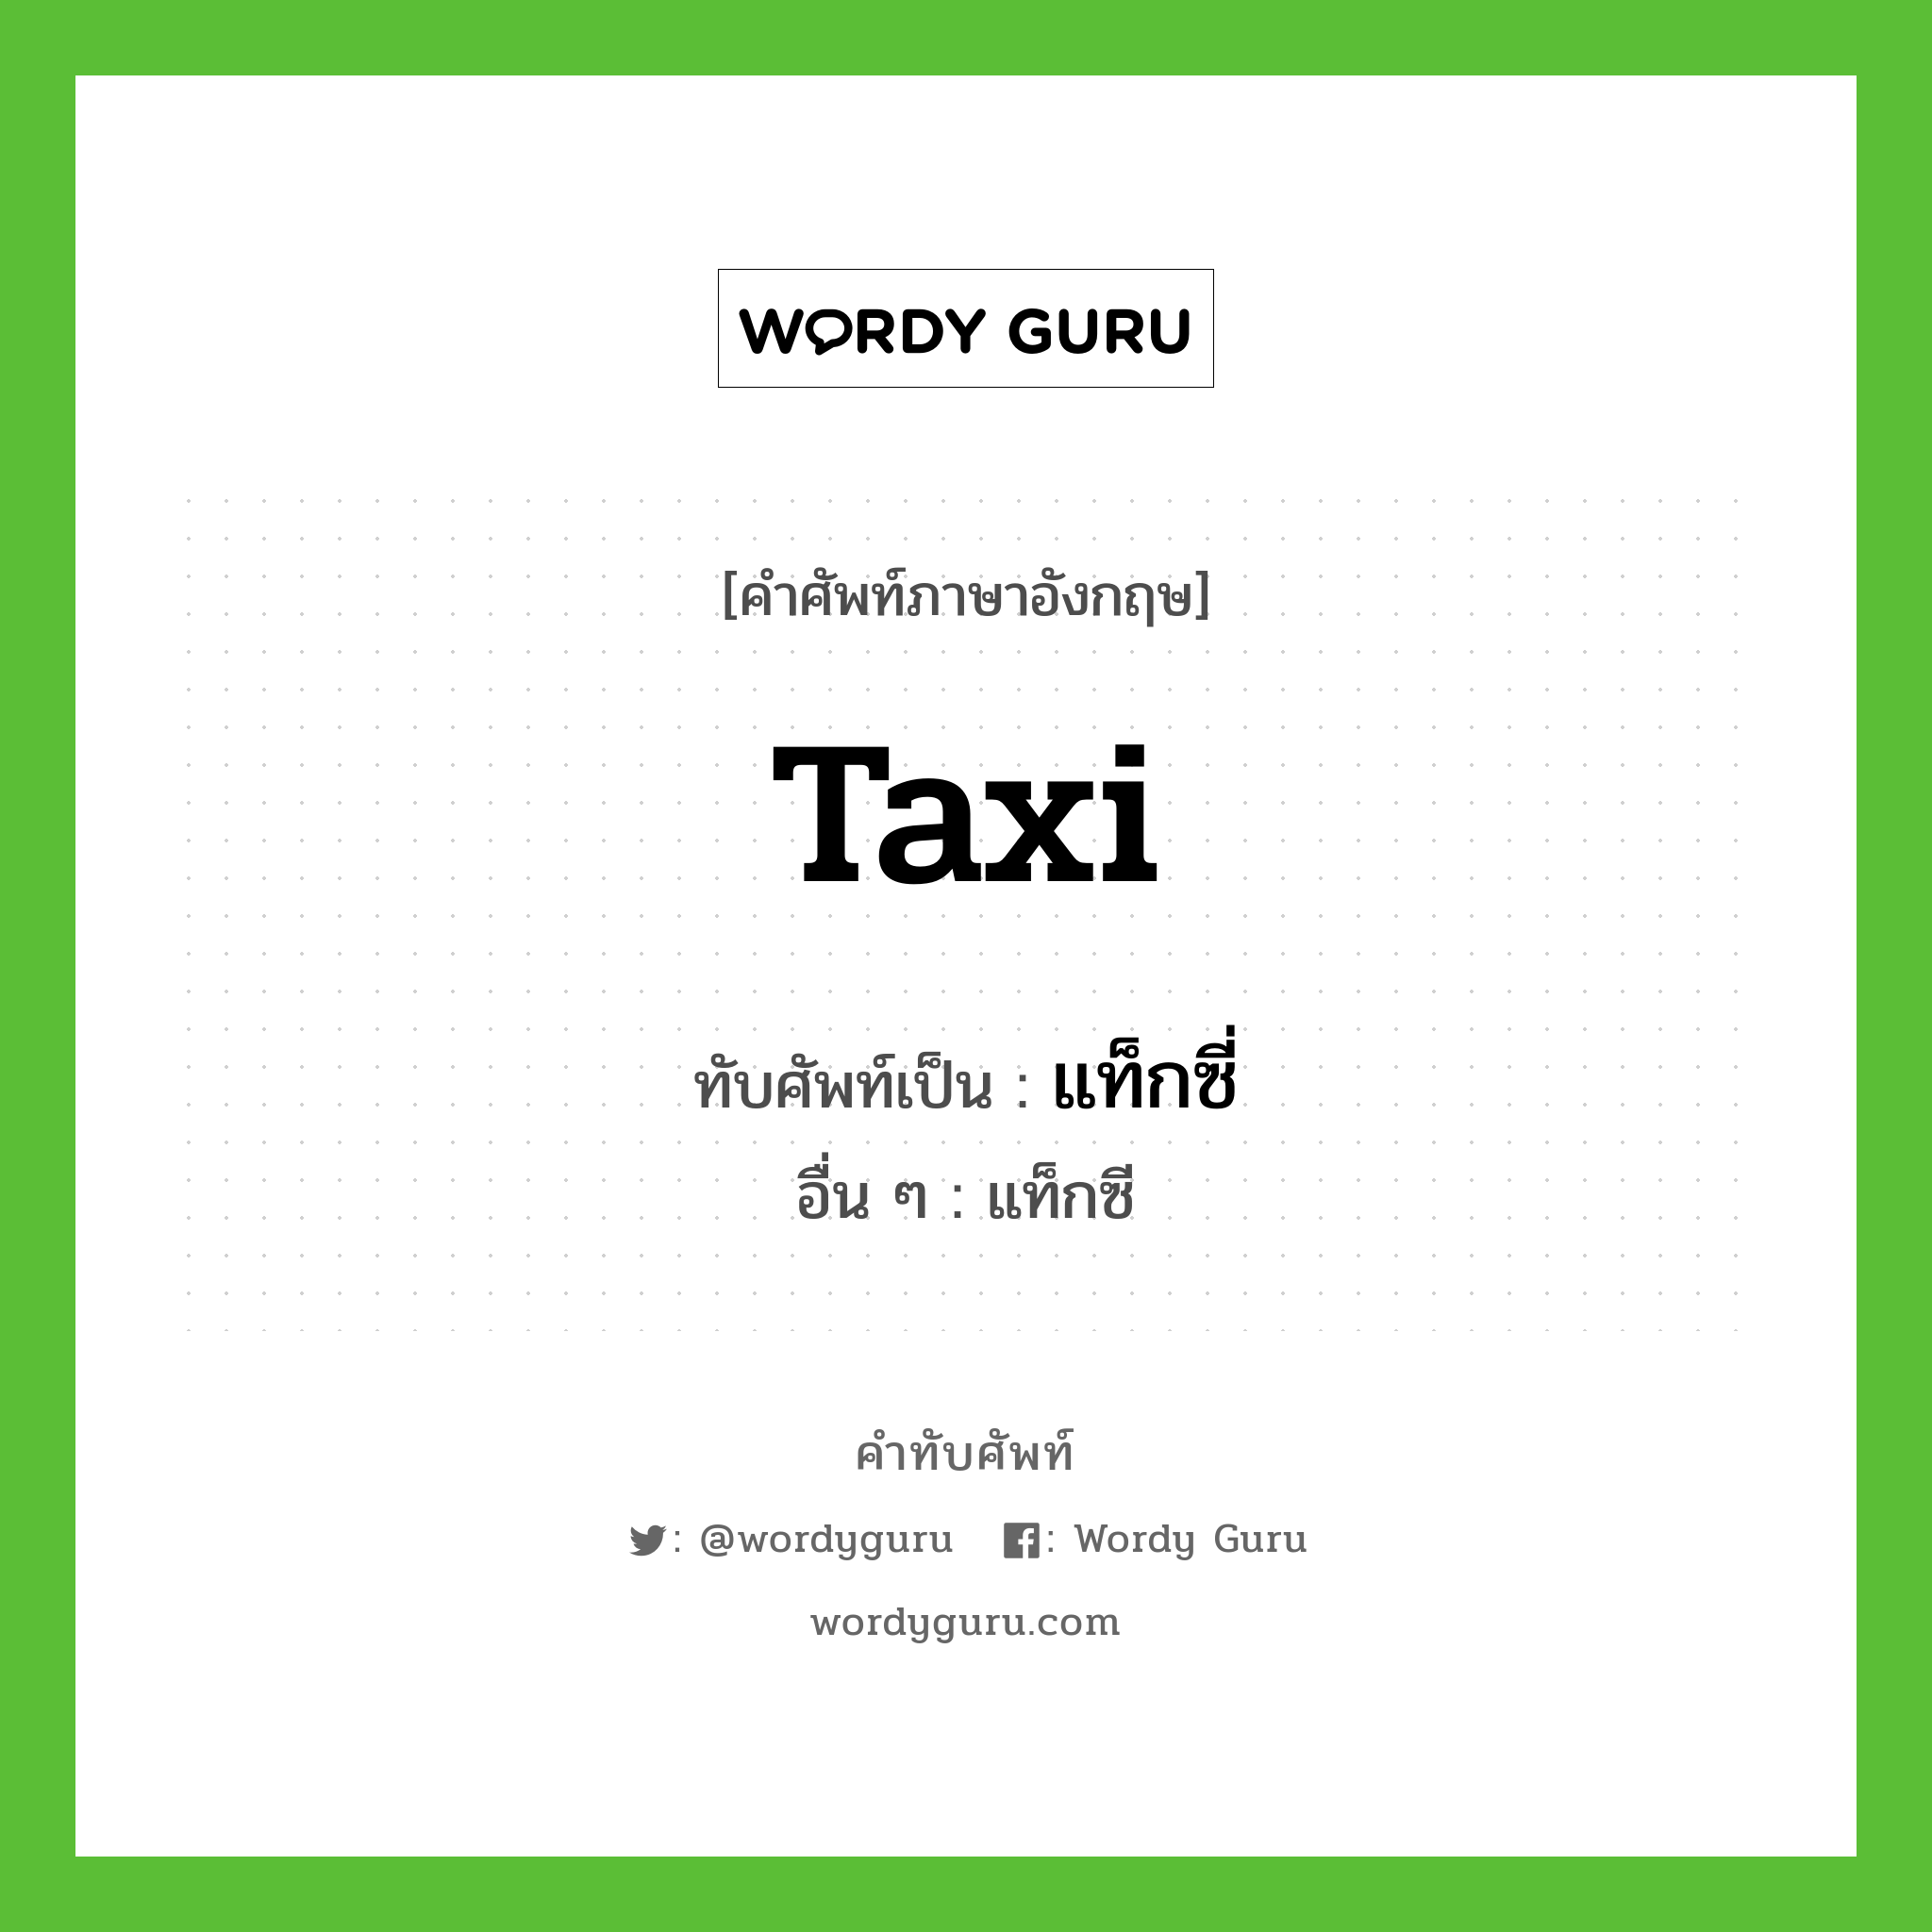 แท็กซี่ เขียนอย่างไร?, คำศัพท์ภาษาอังกฤษ แท็กซี่ ทับศัพท์เป็น taxi อื่น ๆ แท็กซี